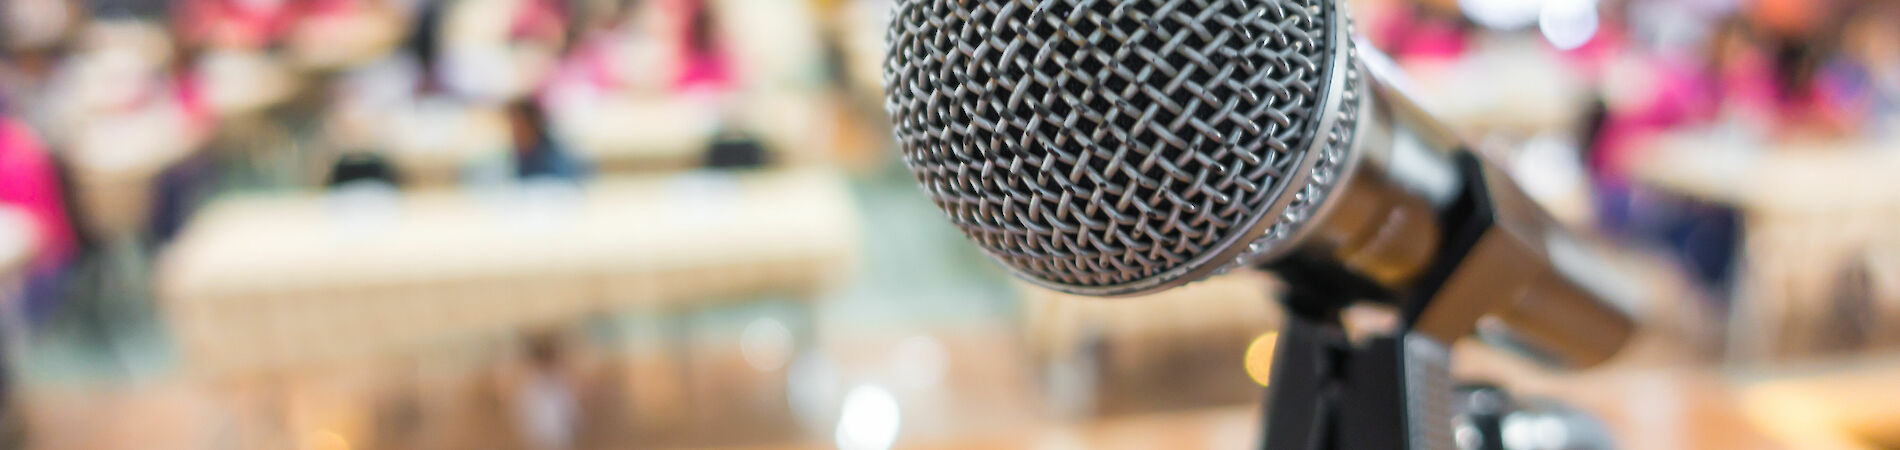 Mikrofon in einem Konferenzsaal